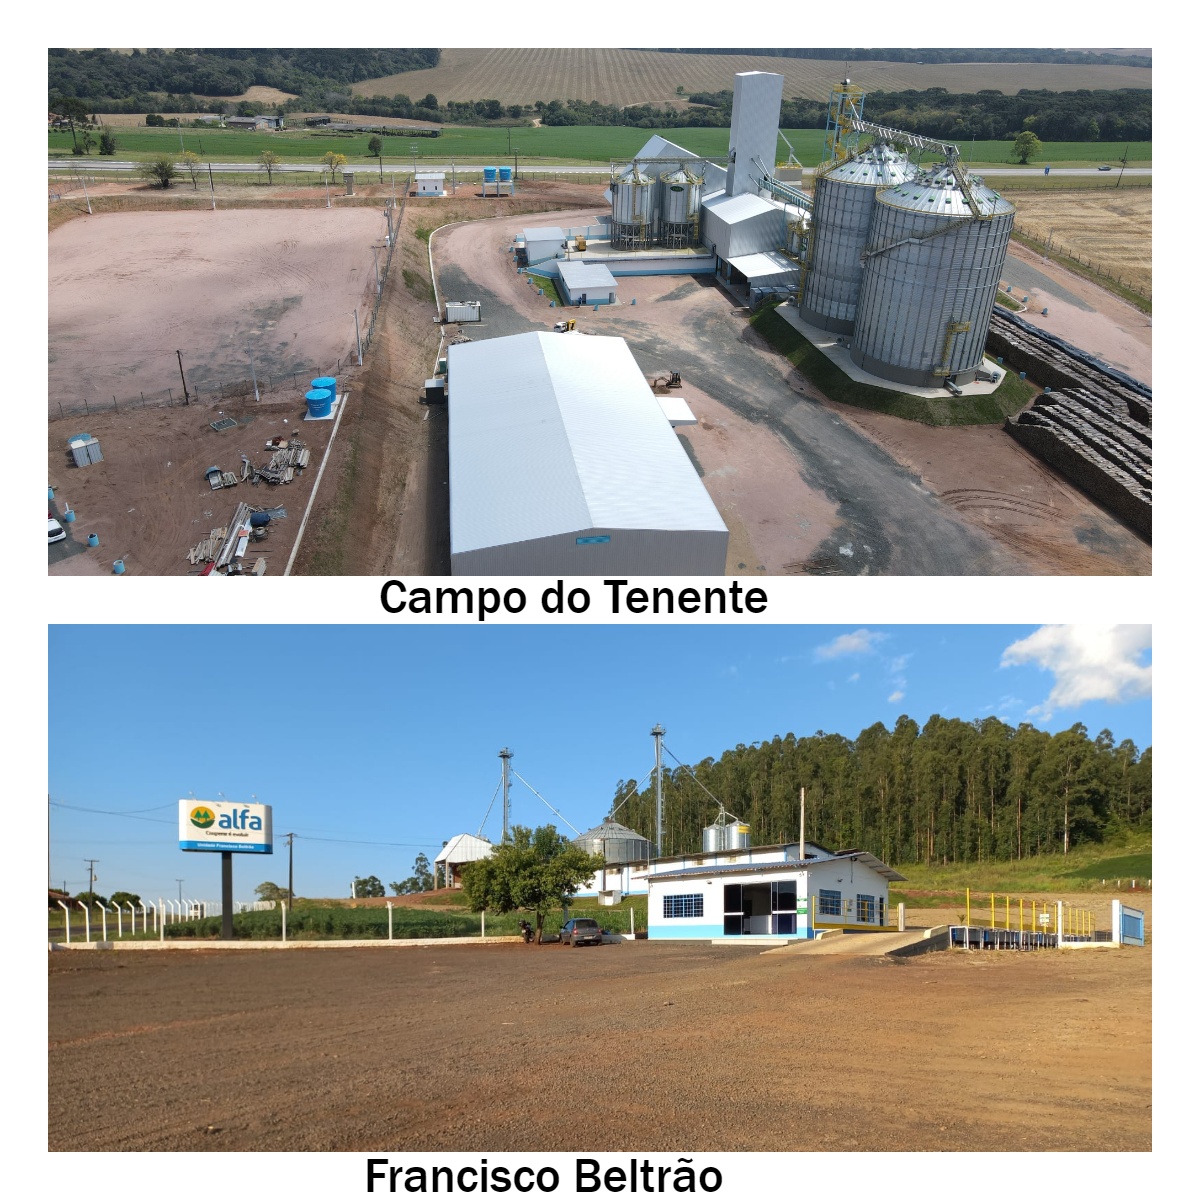 Ampliando a armazenagem e recebimento de grãos no Paraná